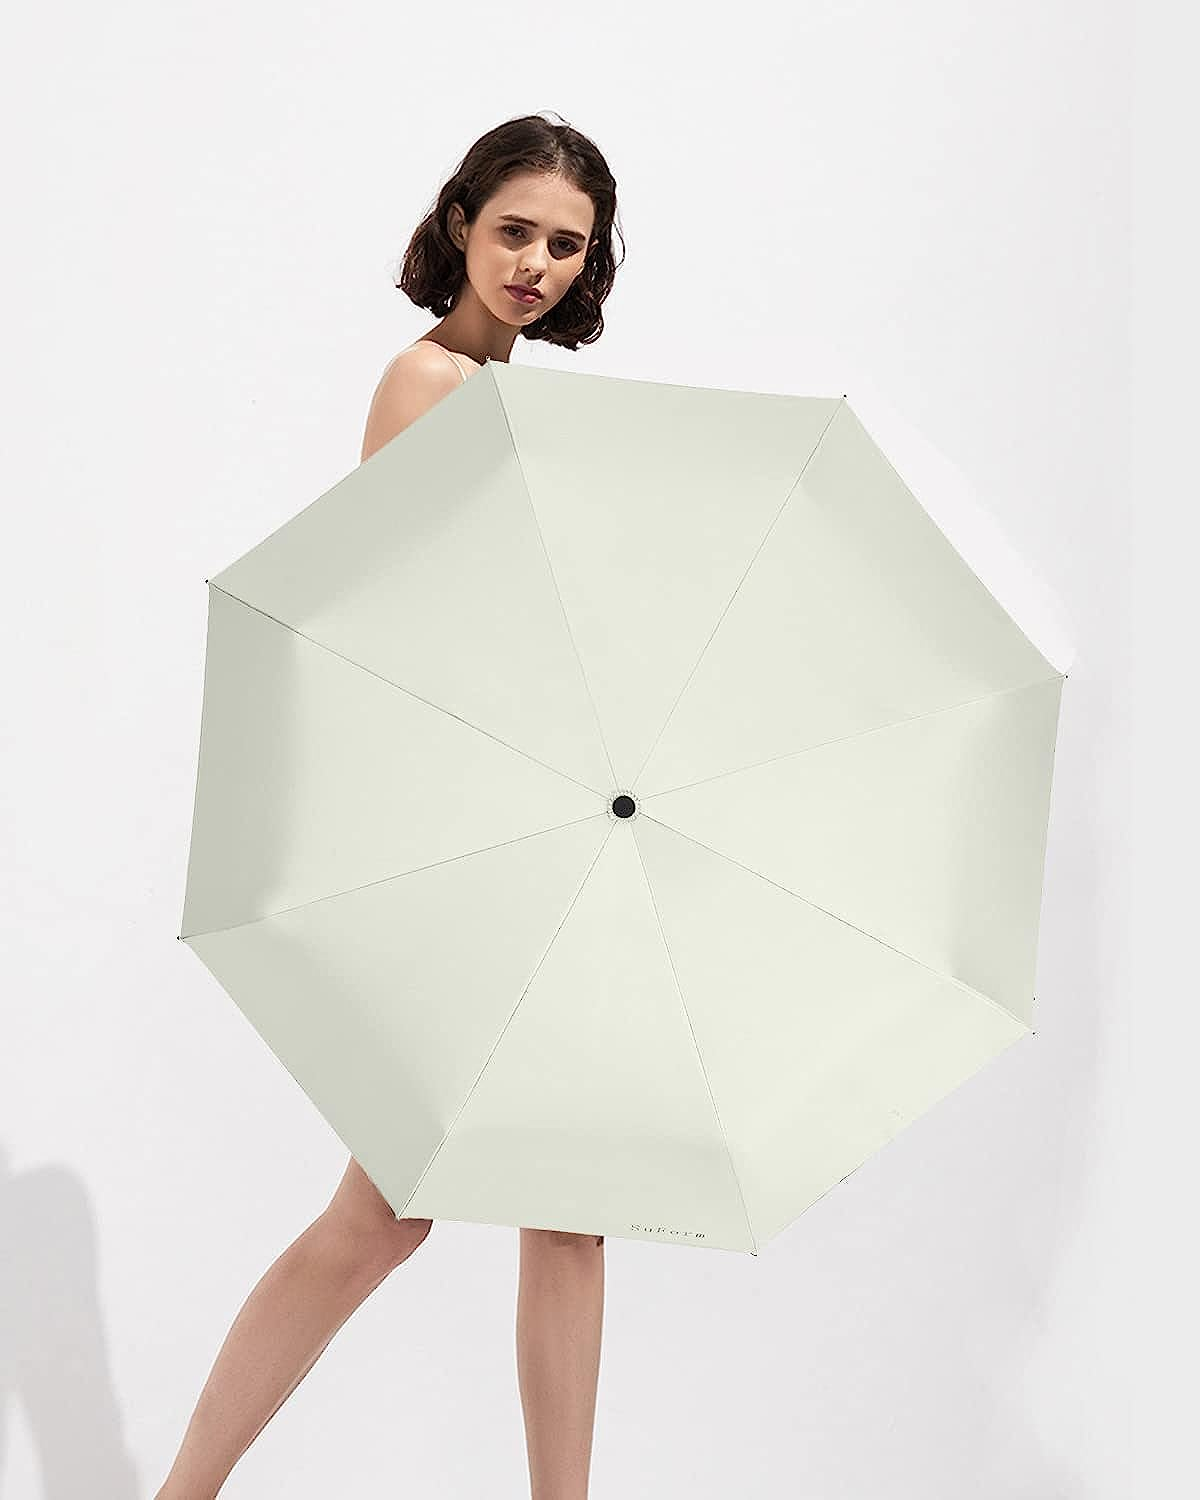 日傘 折りたたみ傘 晴雨兼用 ホワイト UVカット 傘 遮光 ワンタッチ